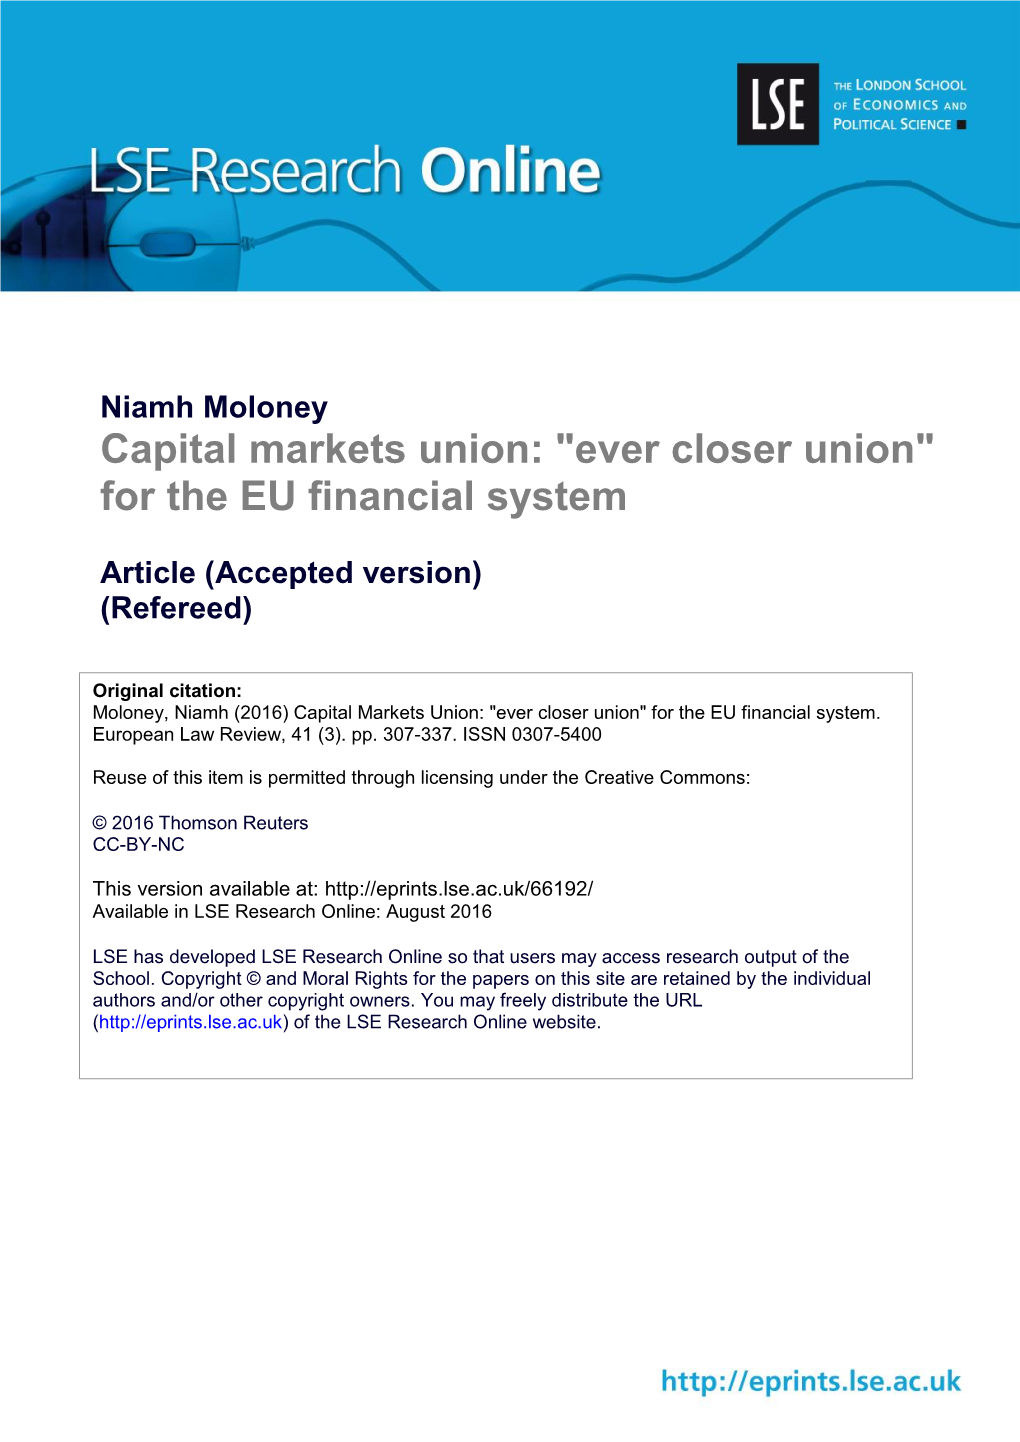 Capital Markets Union: "Ever Closer Union" for the EU Financial System